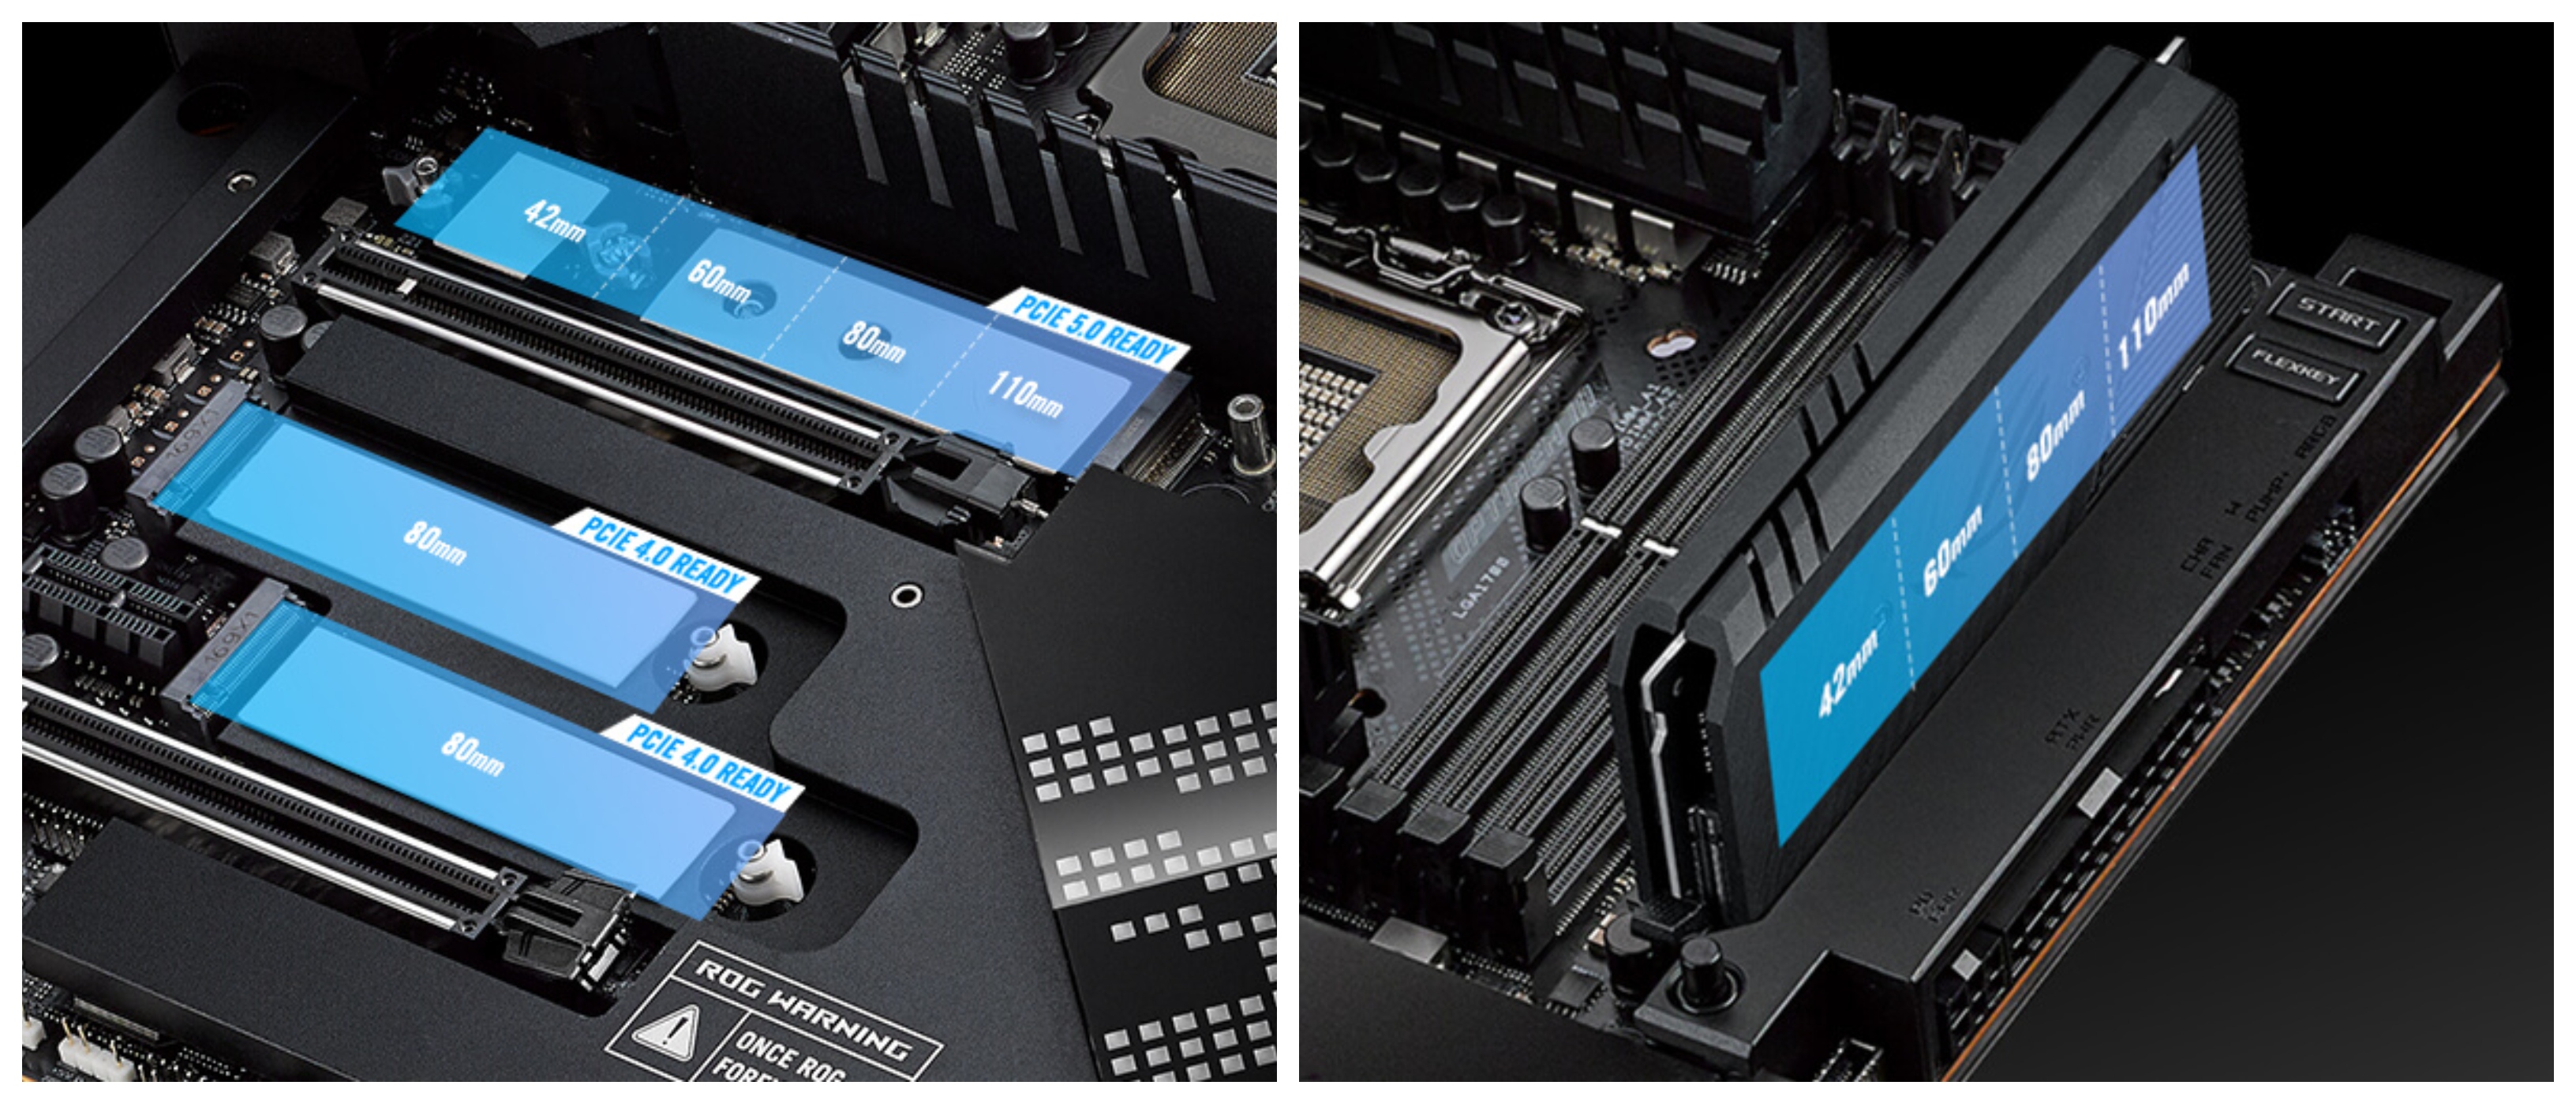 Základní deska Asus ROG Maximus Z690 Extreme je připravena na 2 grafické karty díky modernímu slotu PCI Express 5.0 16x, který přináší až 2násobnou rychlost přenosu dat oproti standardu PCIe 4.0.